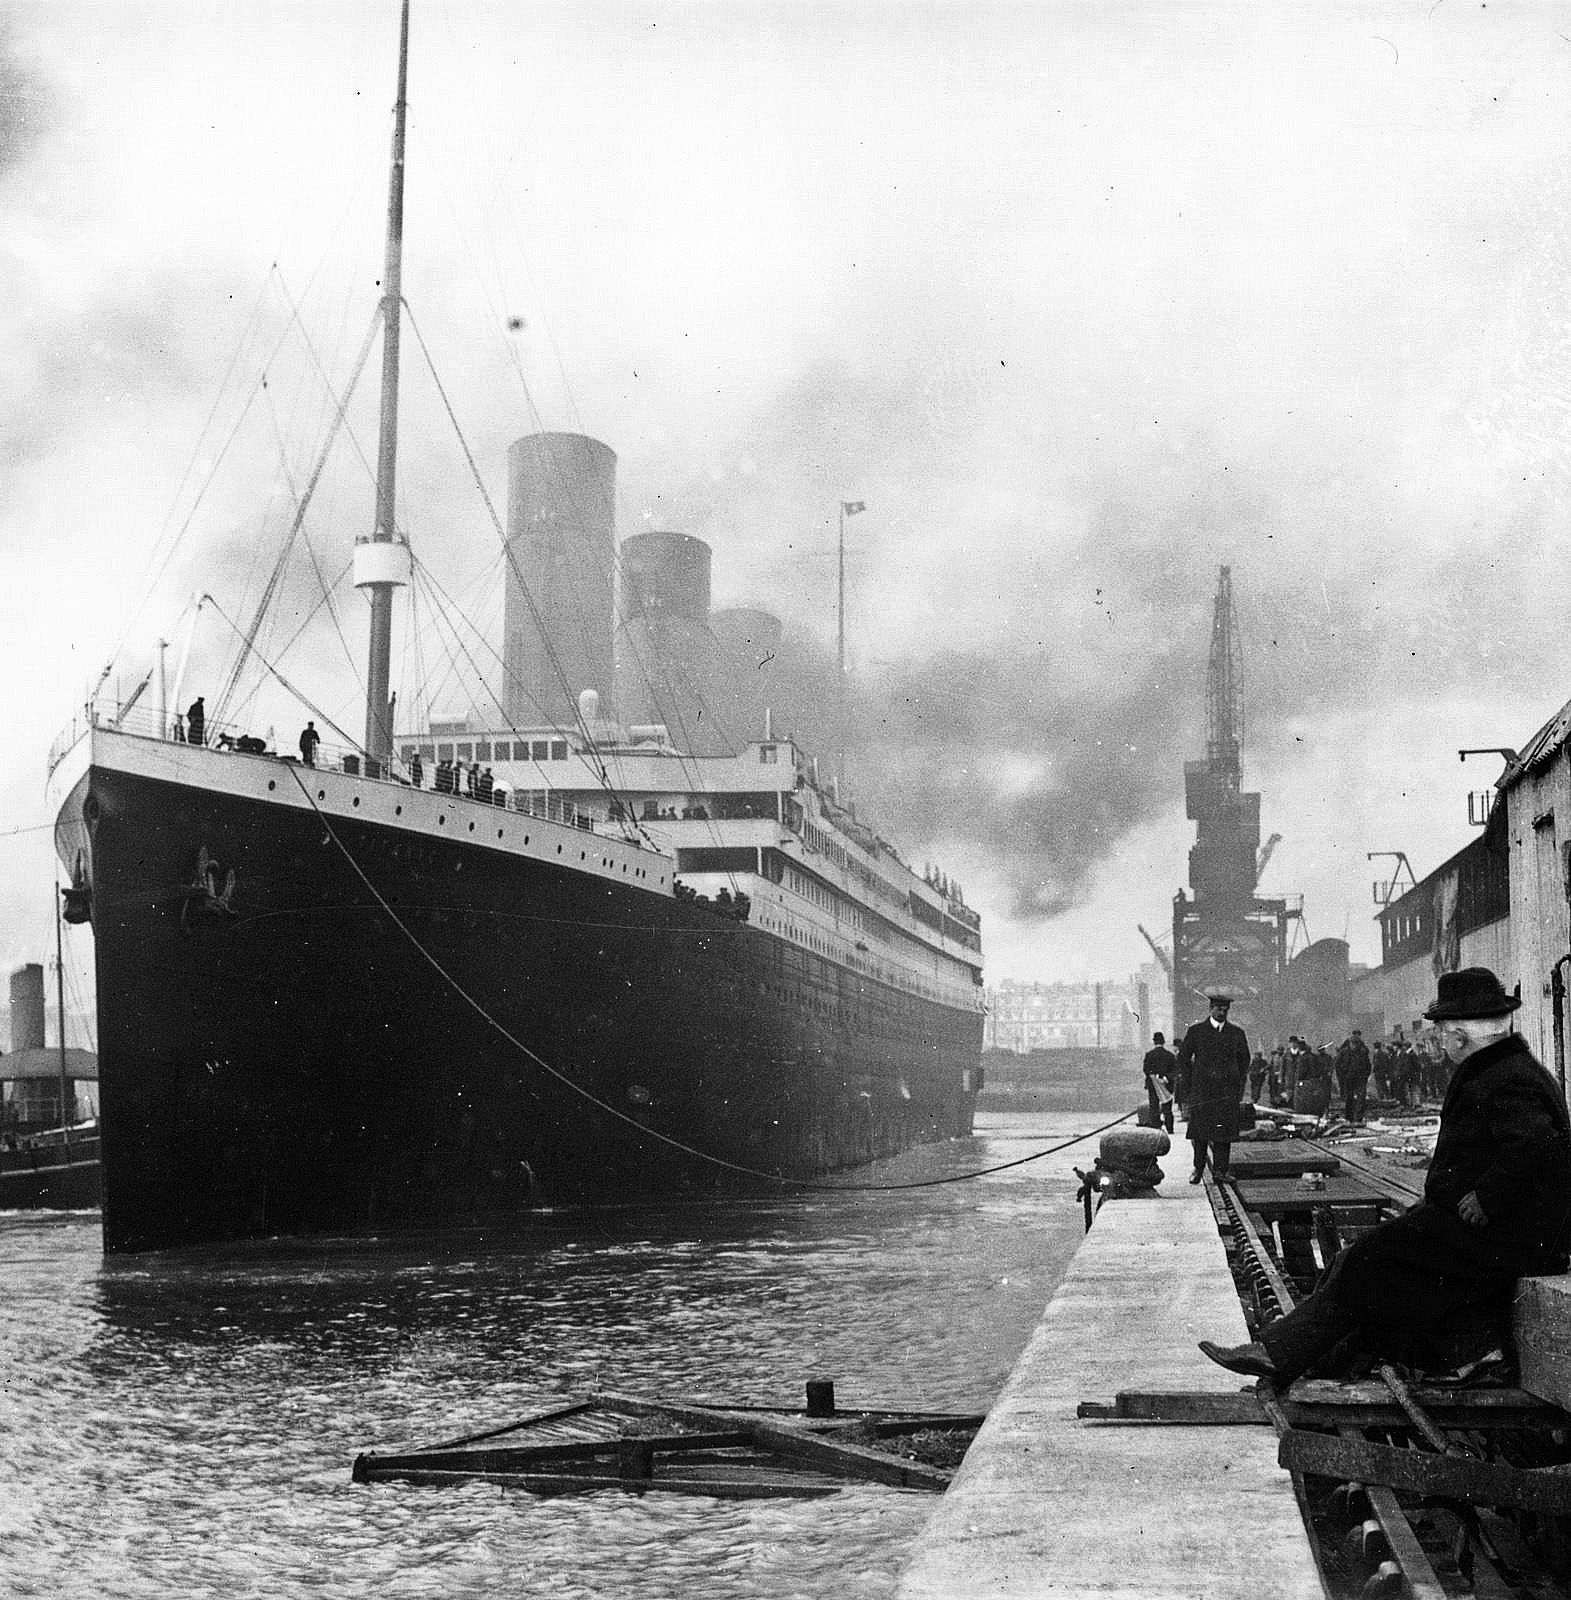 El Titanic podria no haver-se enfonsat en xocar amb l'iceberg